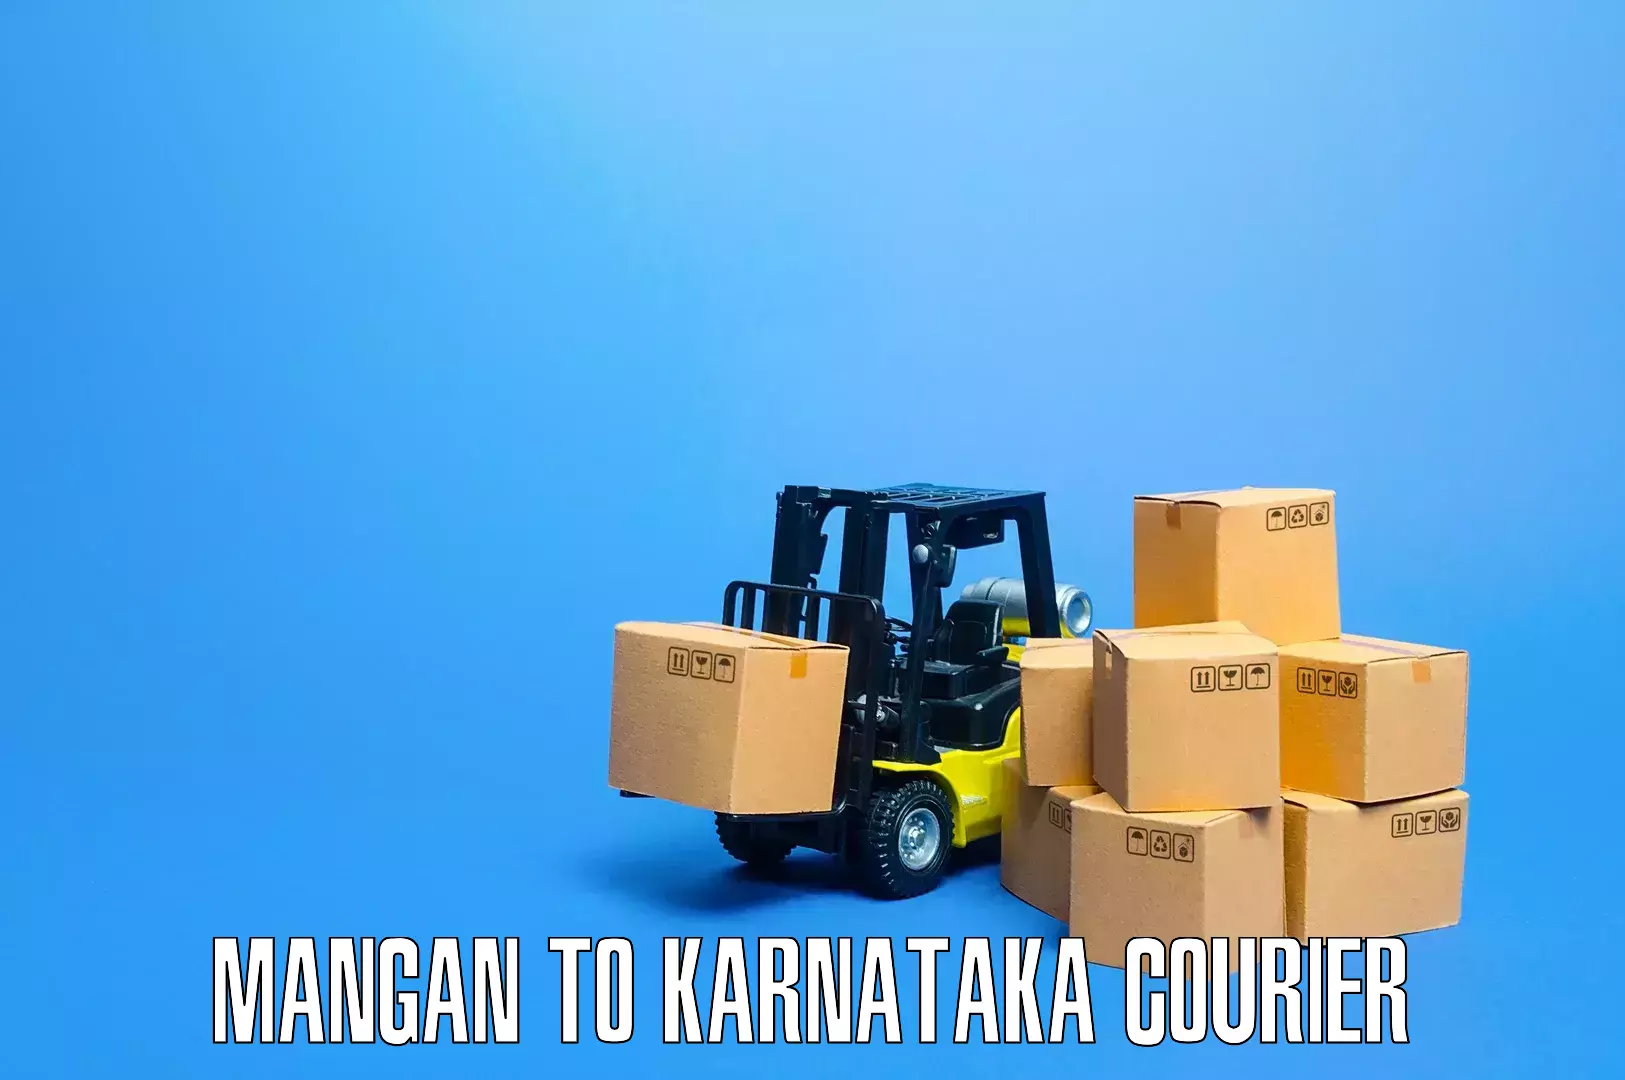 Furniture relocation experts Mangan to Karnataka